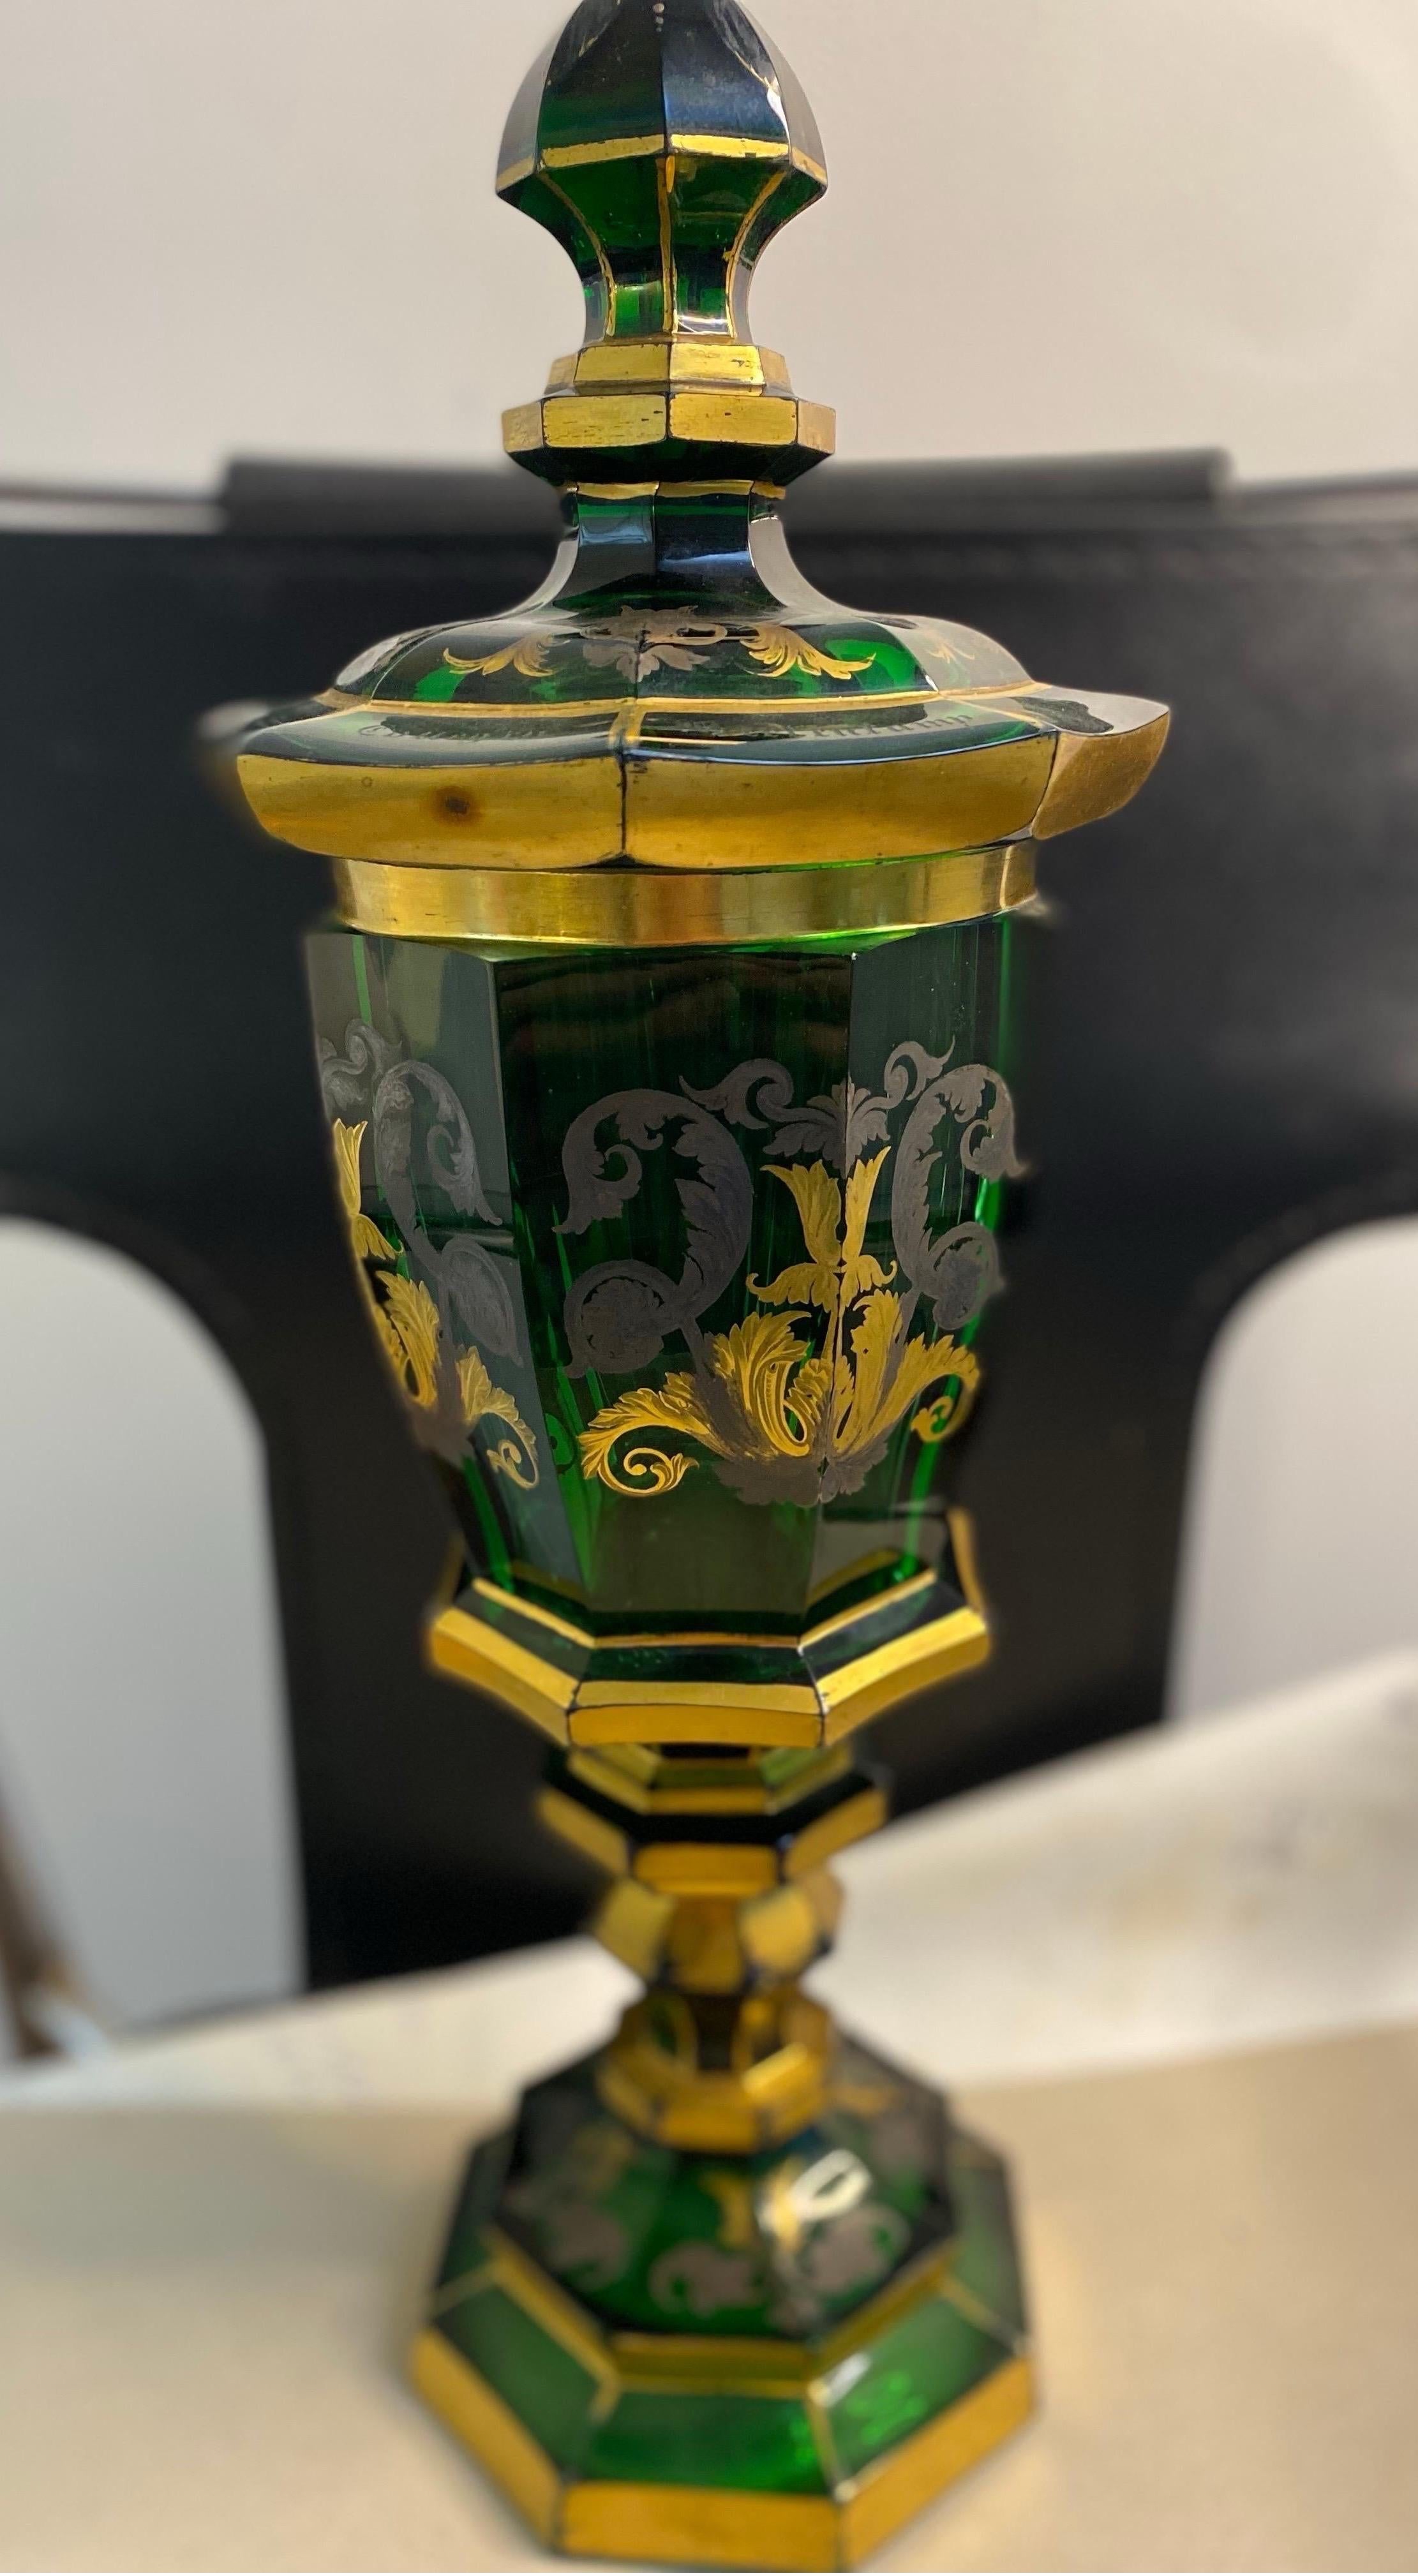 Coupe en cristal du 19e siècle 
Couleur:Vert,Or
Ce gobelet exceptionnel est fait de cristal vert émeraude et est décoré de fleurs dorées.
Gravure sur le couvercle du gobelet 
Année : 1841




